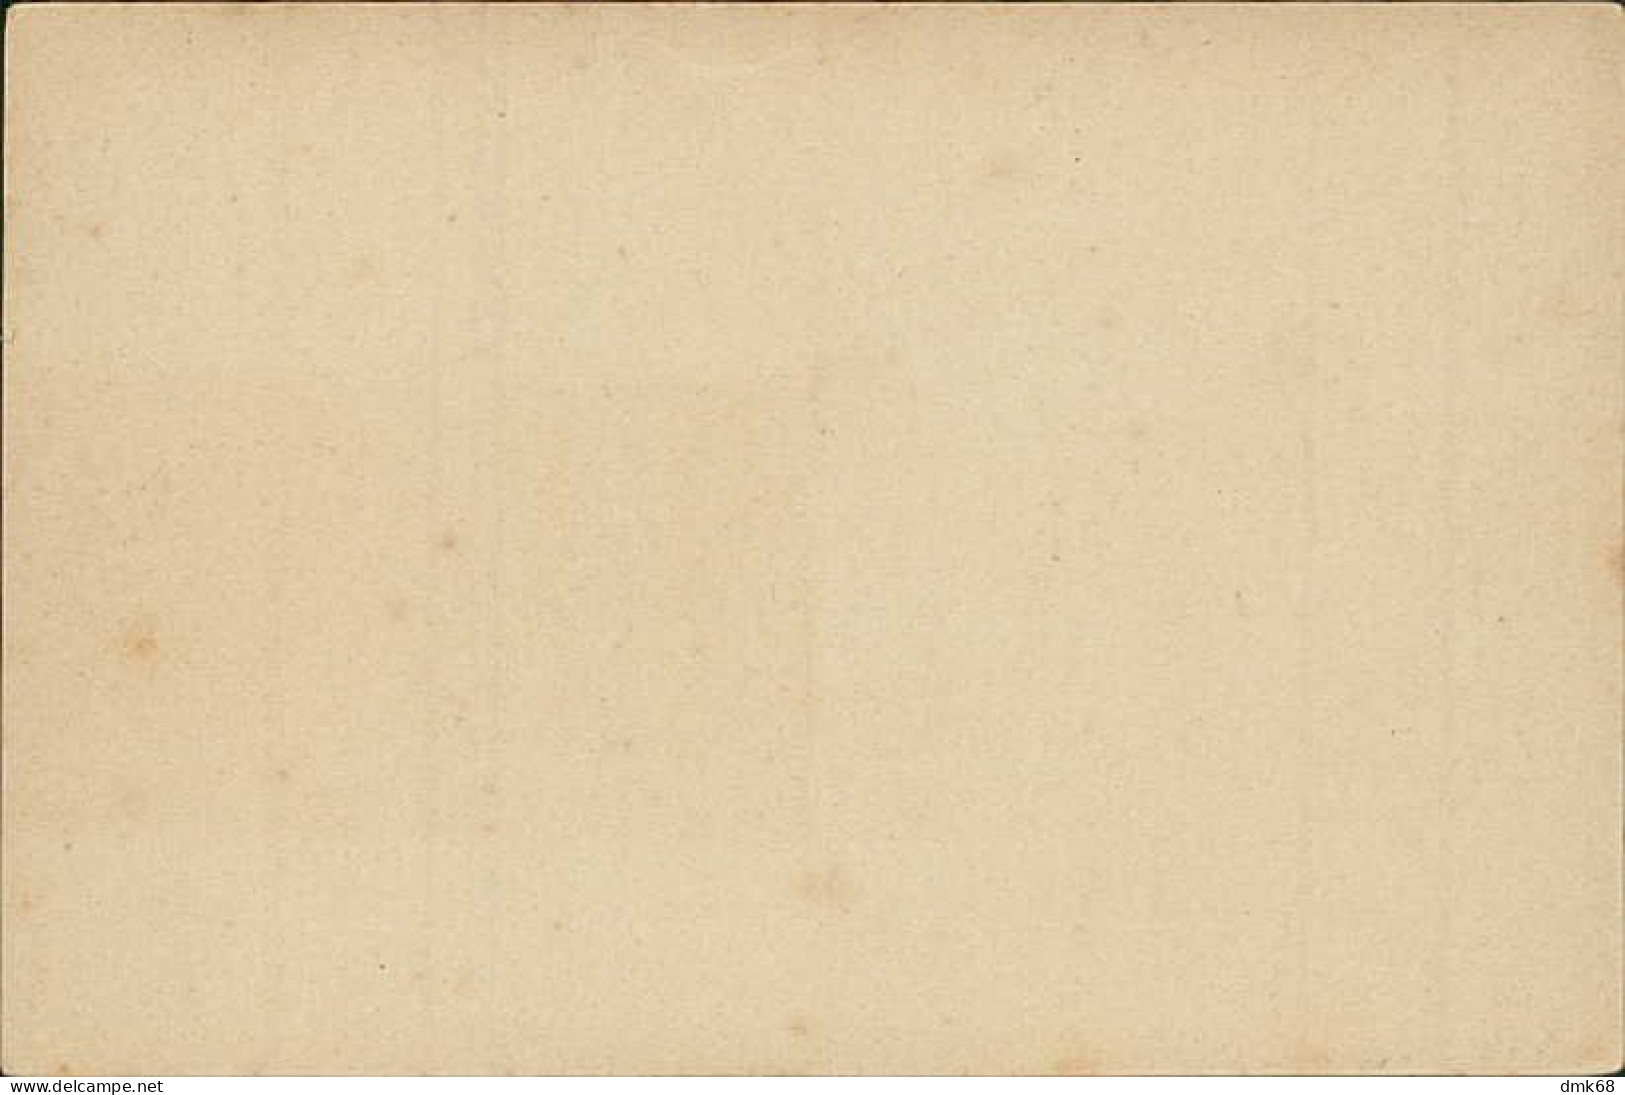 EAST TIMOR - BILHETE POSTAL - TOMAR - PORTUGAL CORREIOS - PRINTED STAMP - TIMOR 2 AVOS (18353/2) - Osttimor